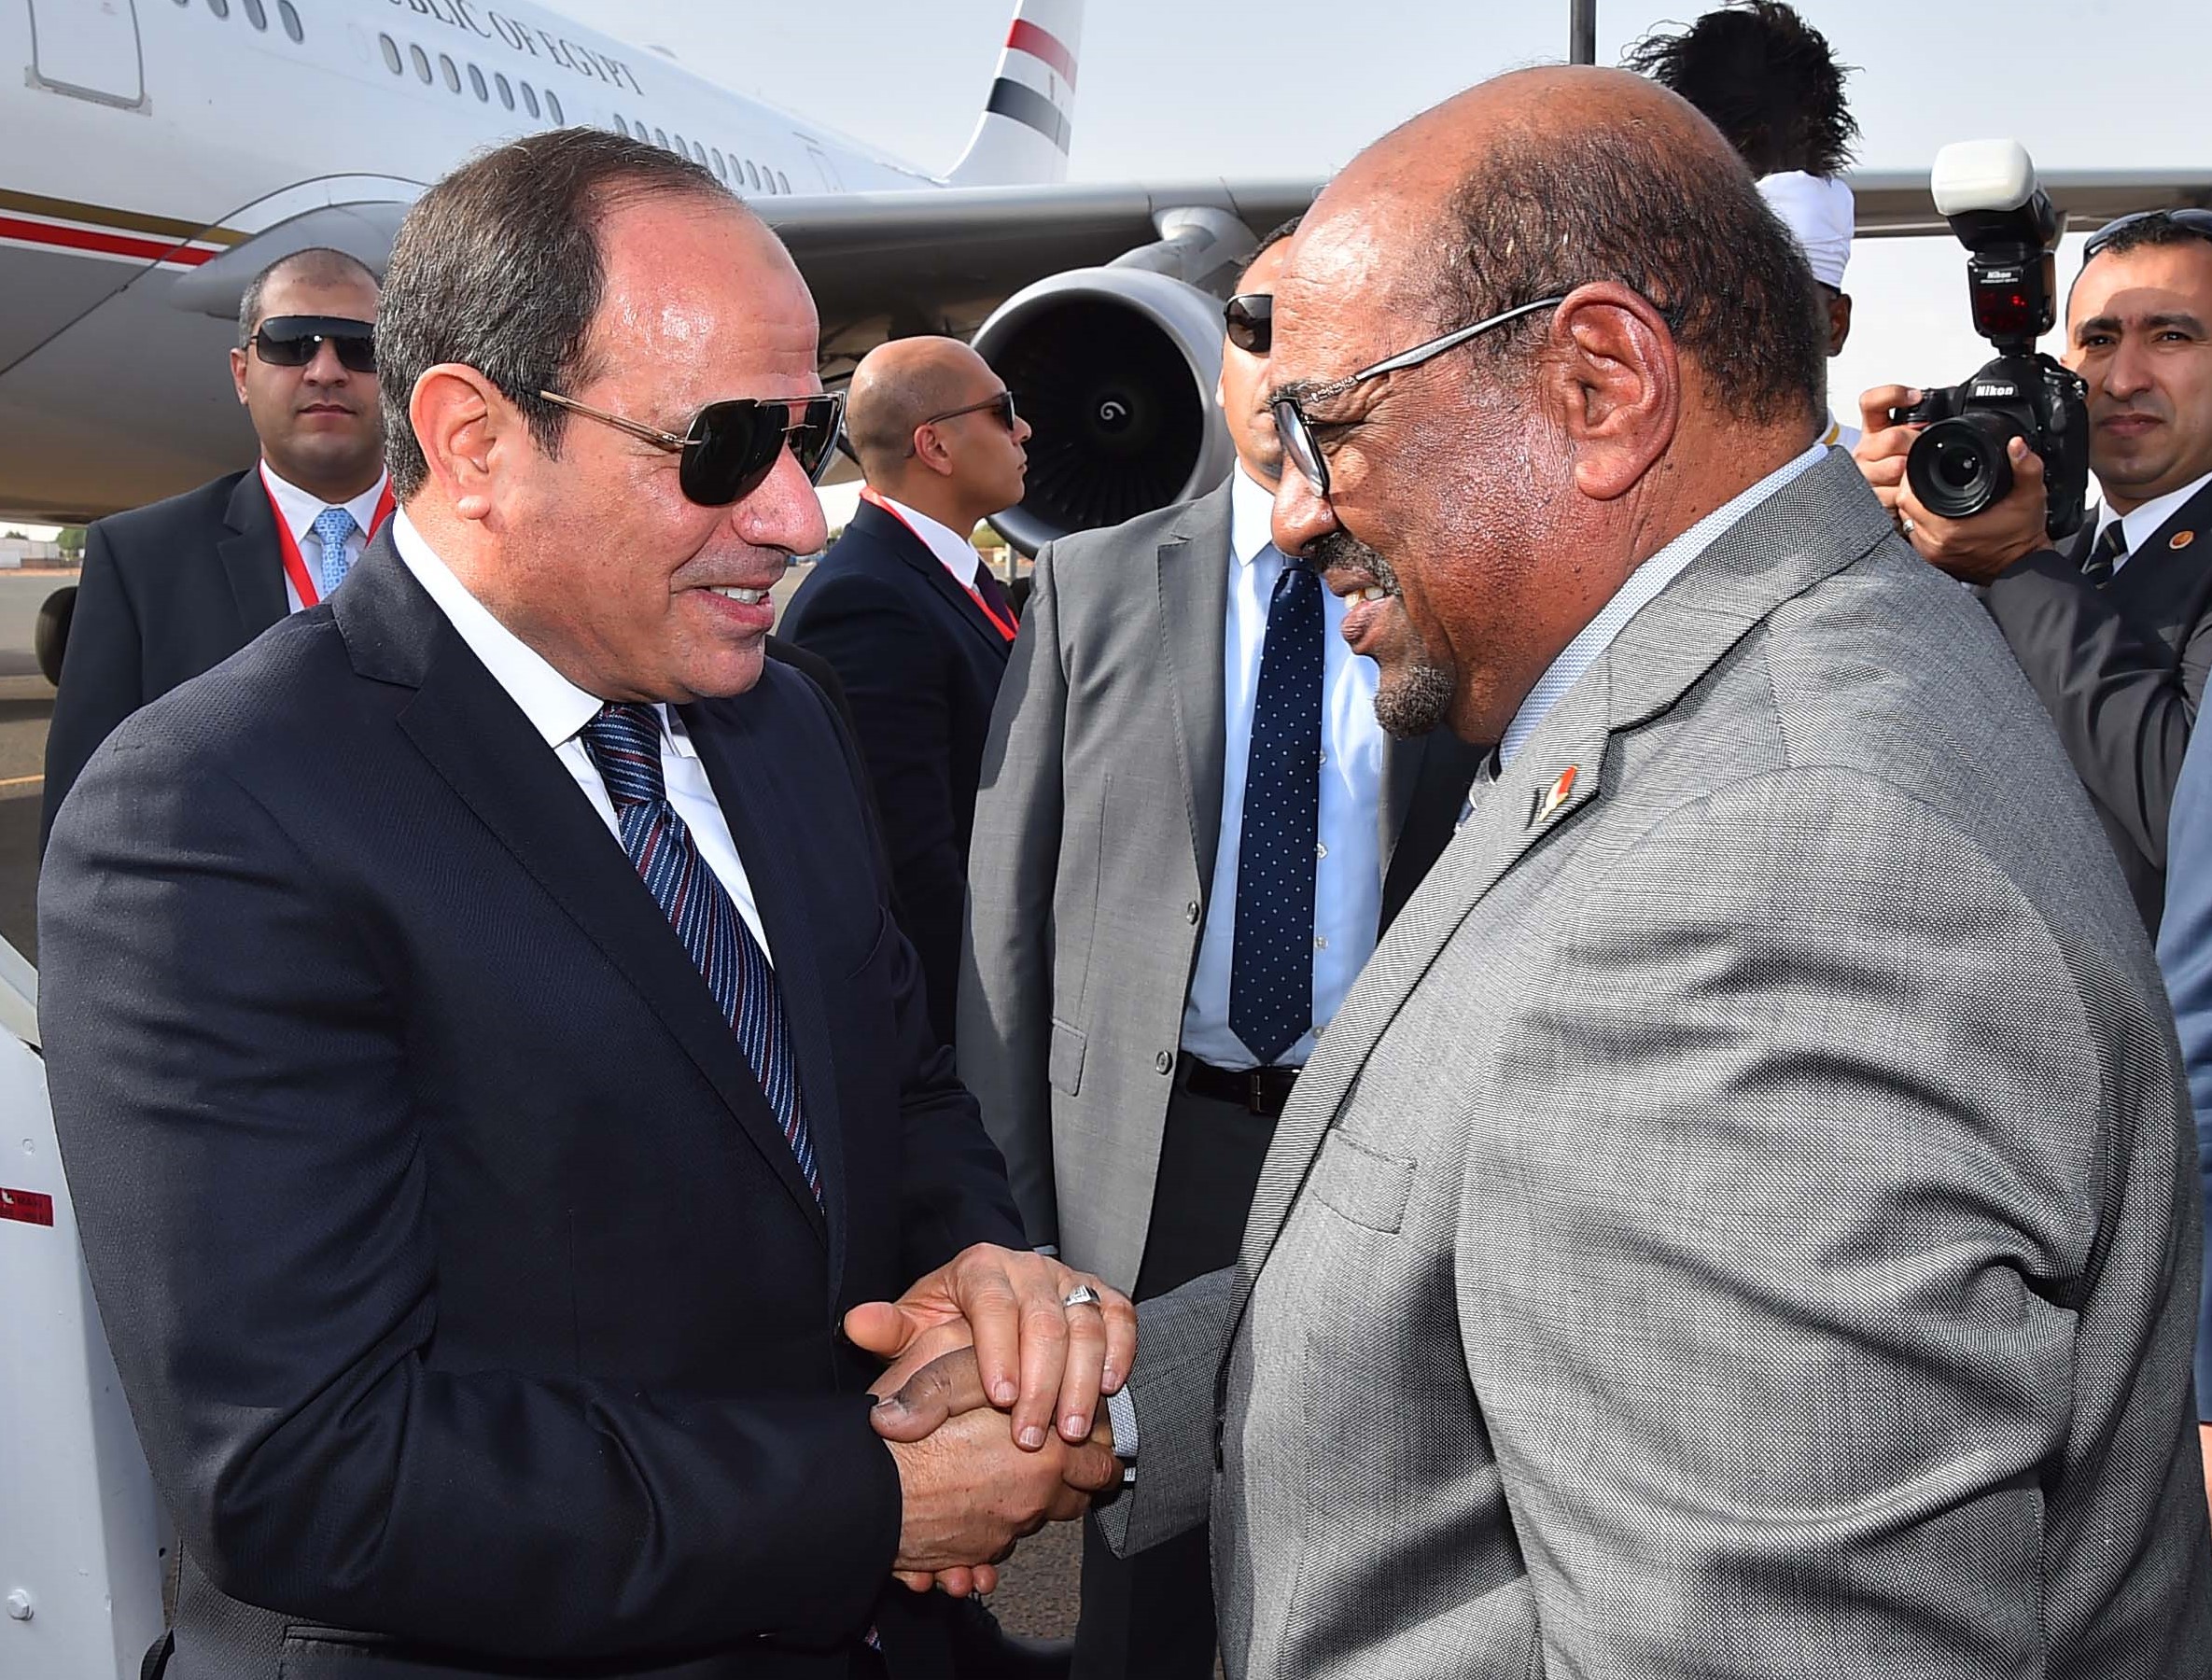 Le président soudanais Omar el-Béchir (à droite) salue son homologue égyptien Abdel Fattah al-Sissi à son arrivée à l’aéroport international de Khartoum, le 19 juillet 2018 (AFP)